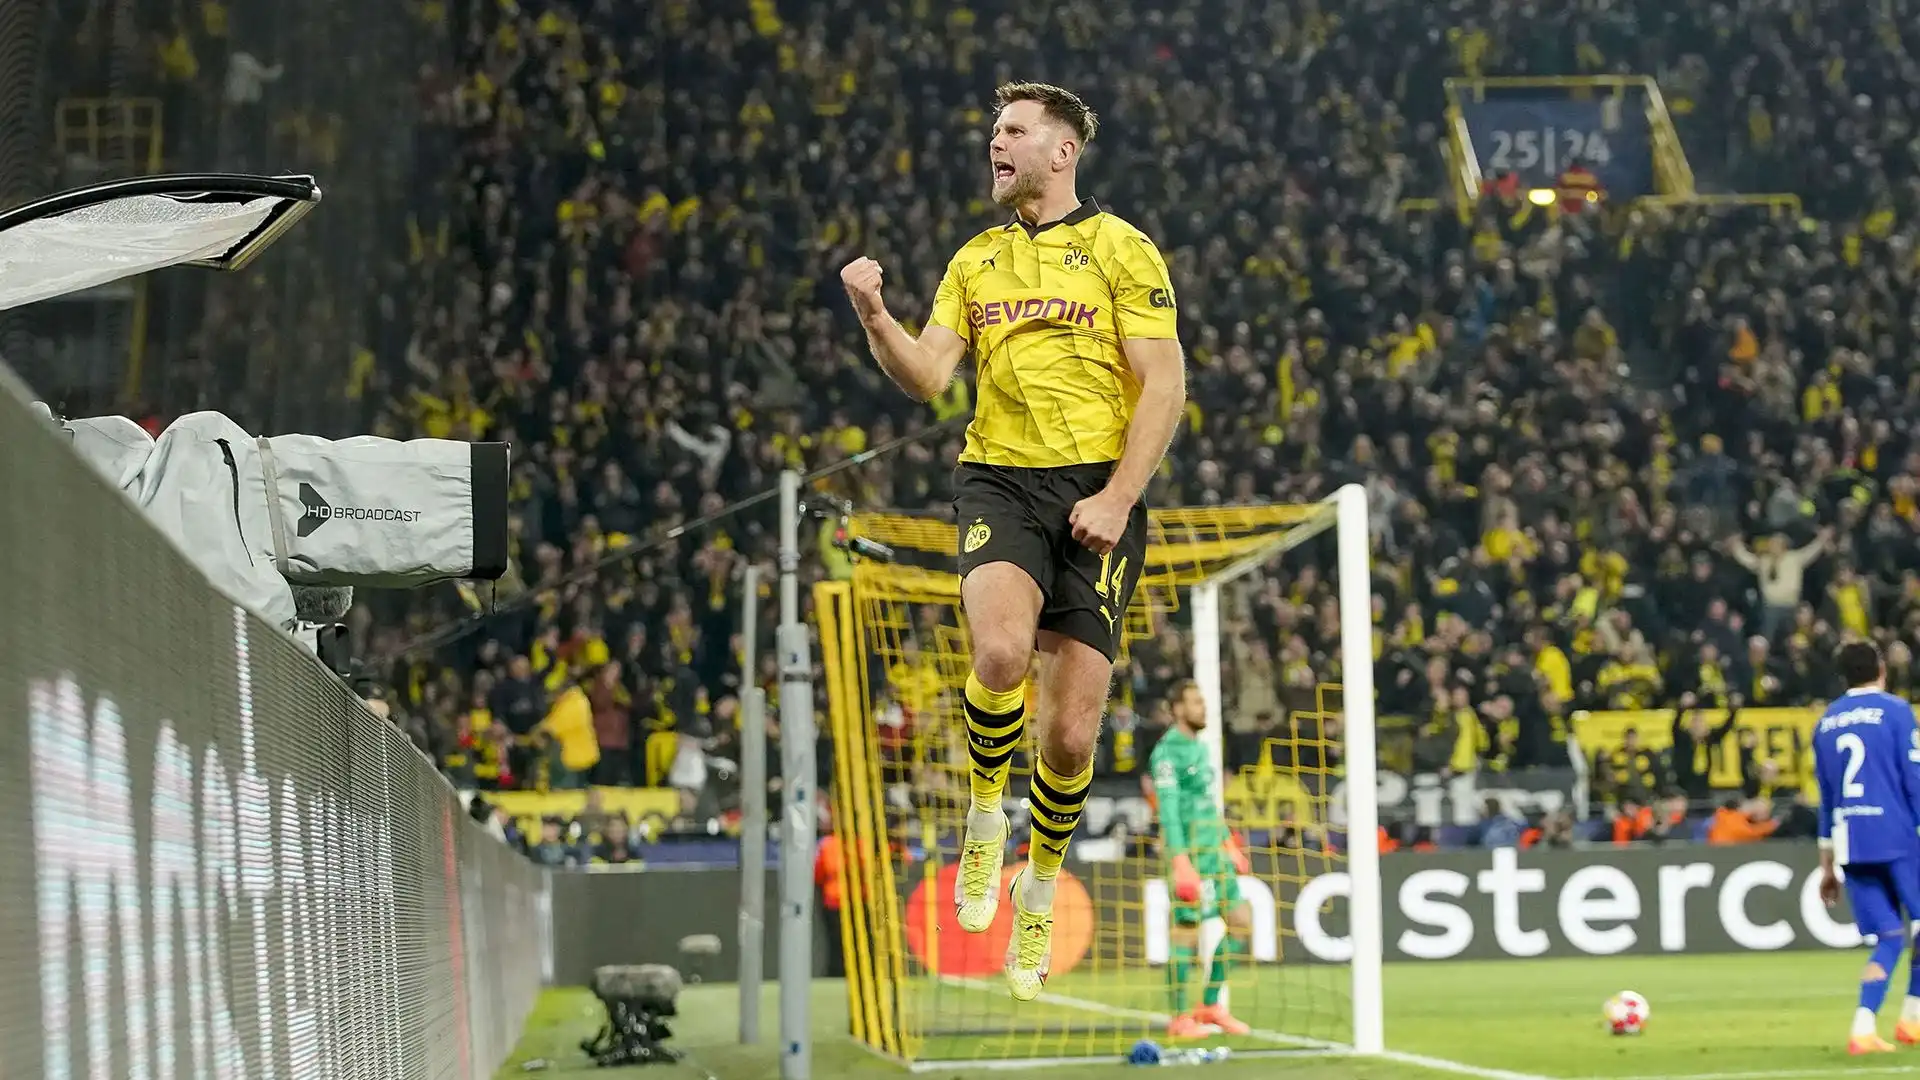 Il Borussia Dortmund ha acquistato Füllkrug la scorsa estate per 17 milioni di euro